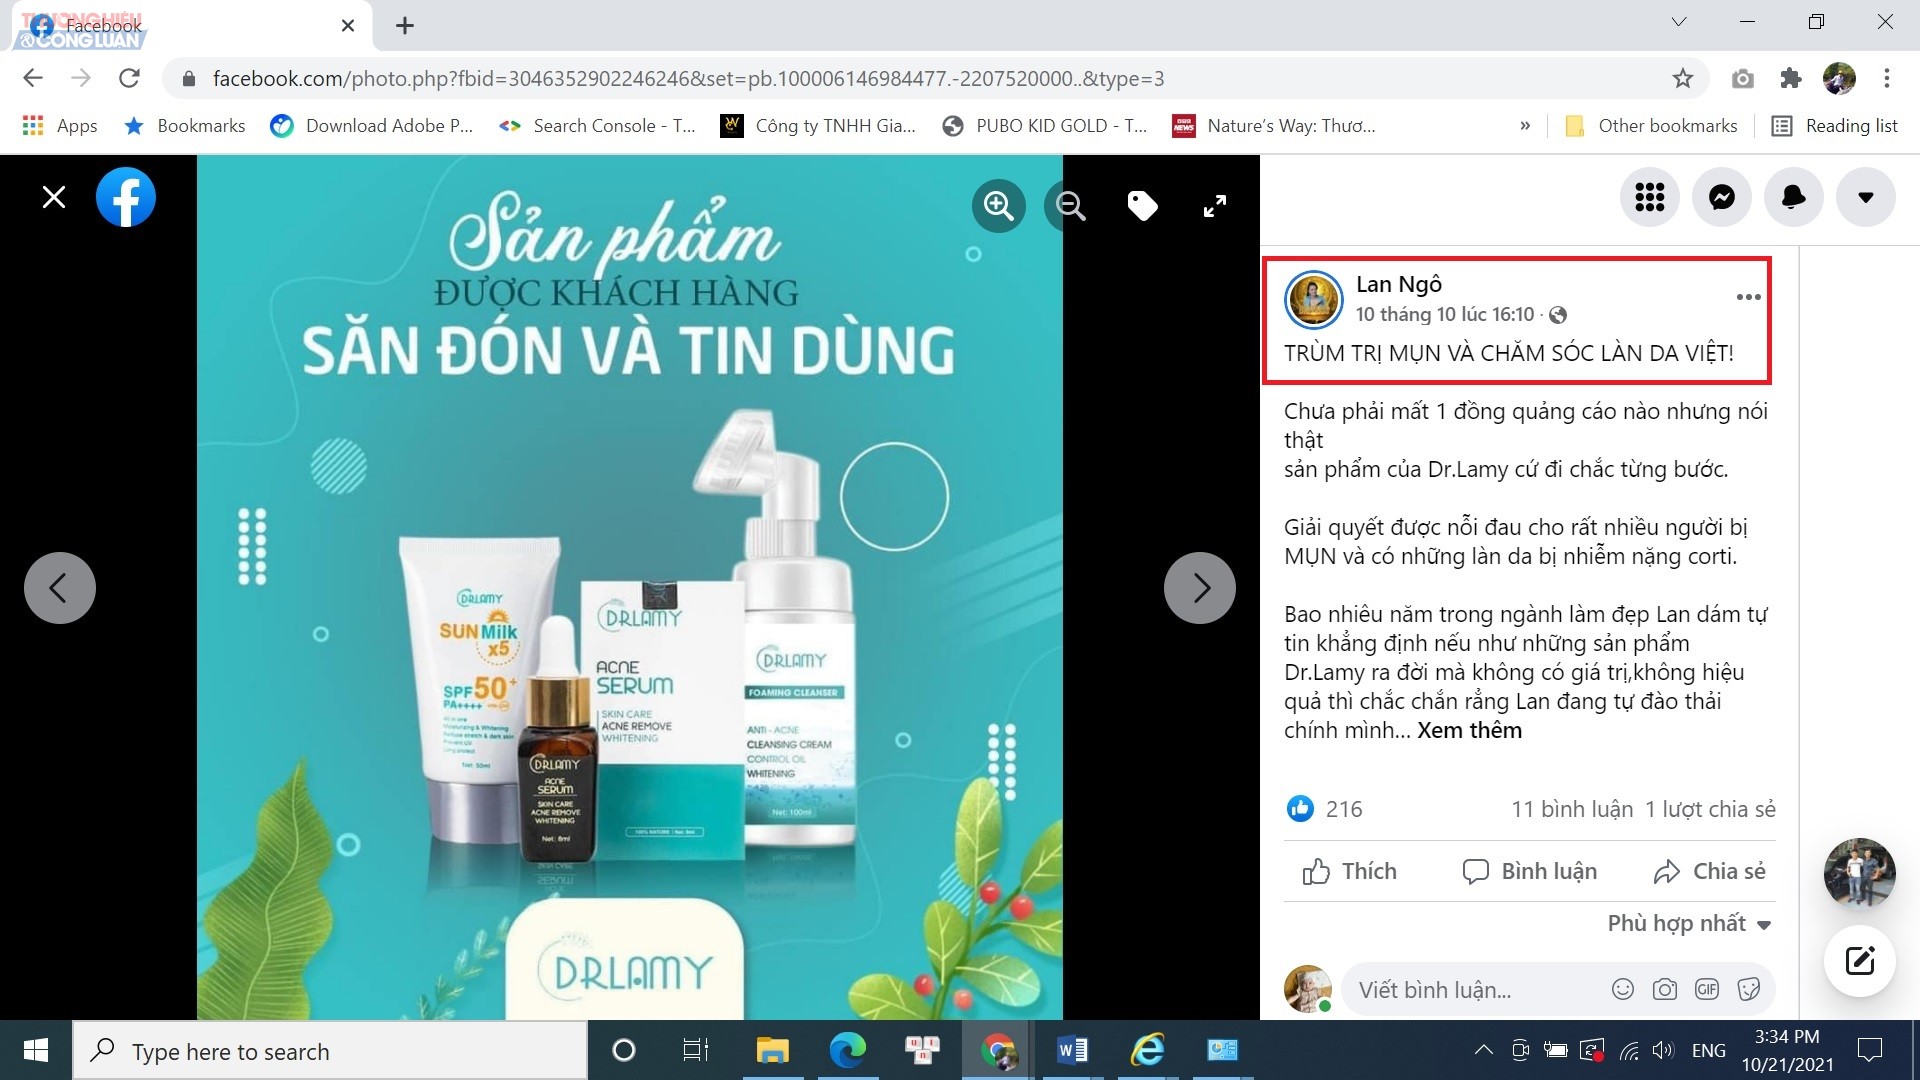 Tài khoản facebook có tên Lan Ngô (được cho là CEO của Công ty TNHH Dược mỹ phẩm Lamy Việt Nam) cũng thường xuyên đăng tải hình ảnh, bài viết sử dụng các từ ngữ gây hiểu lầm cho khách hàng để quảng cáo sản phẩm Dr.Lamy